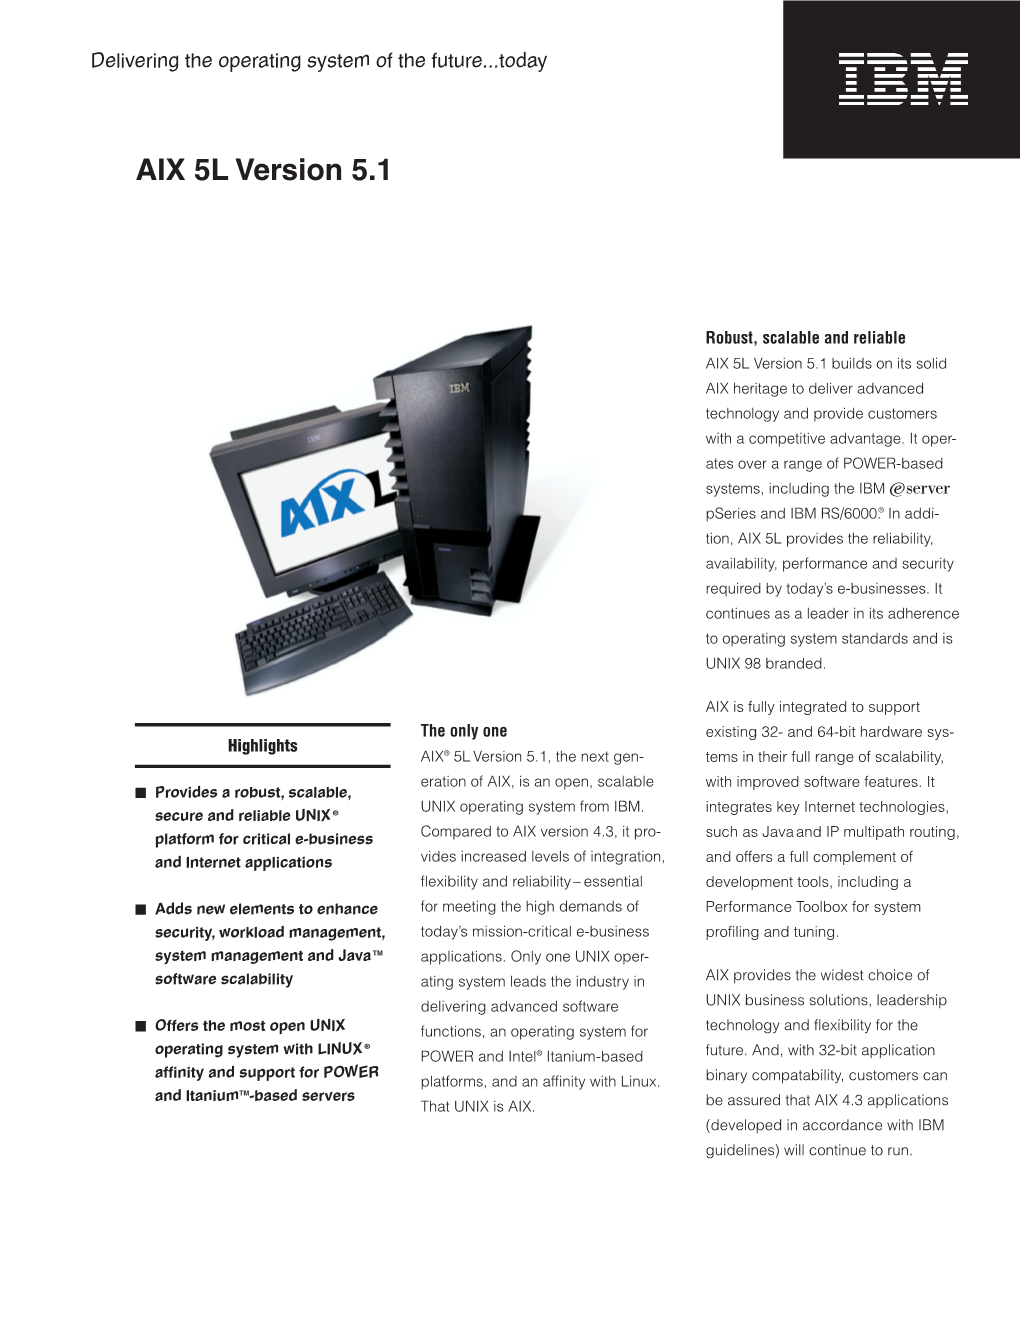 AIX 5L Version 5.1